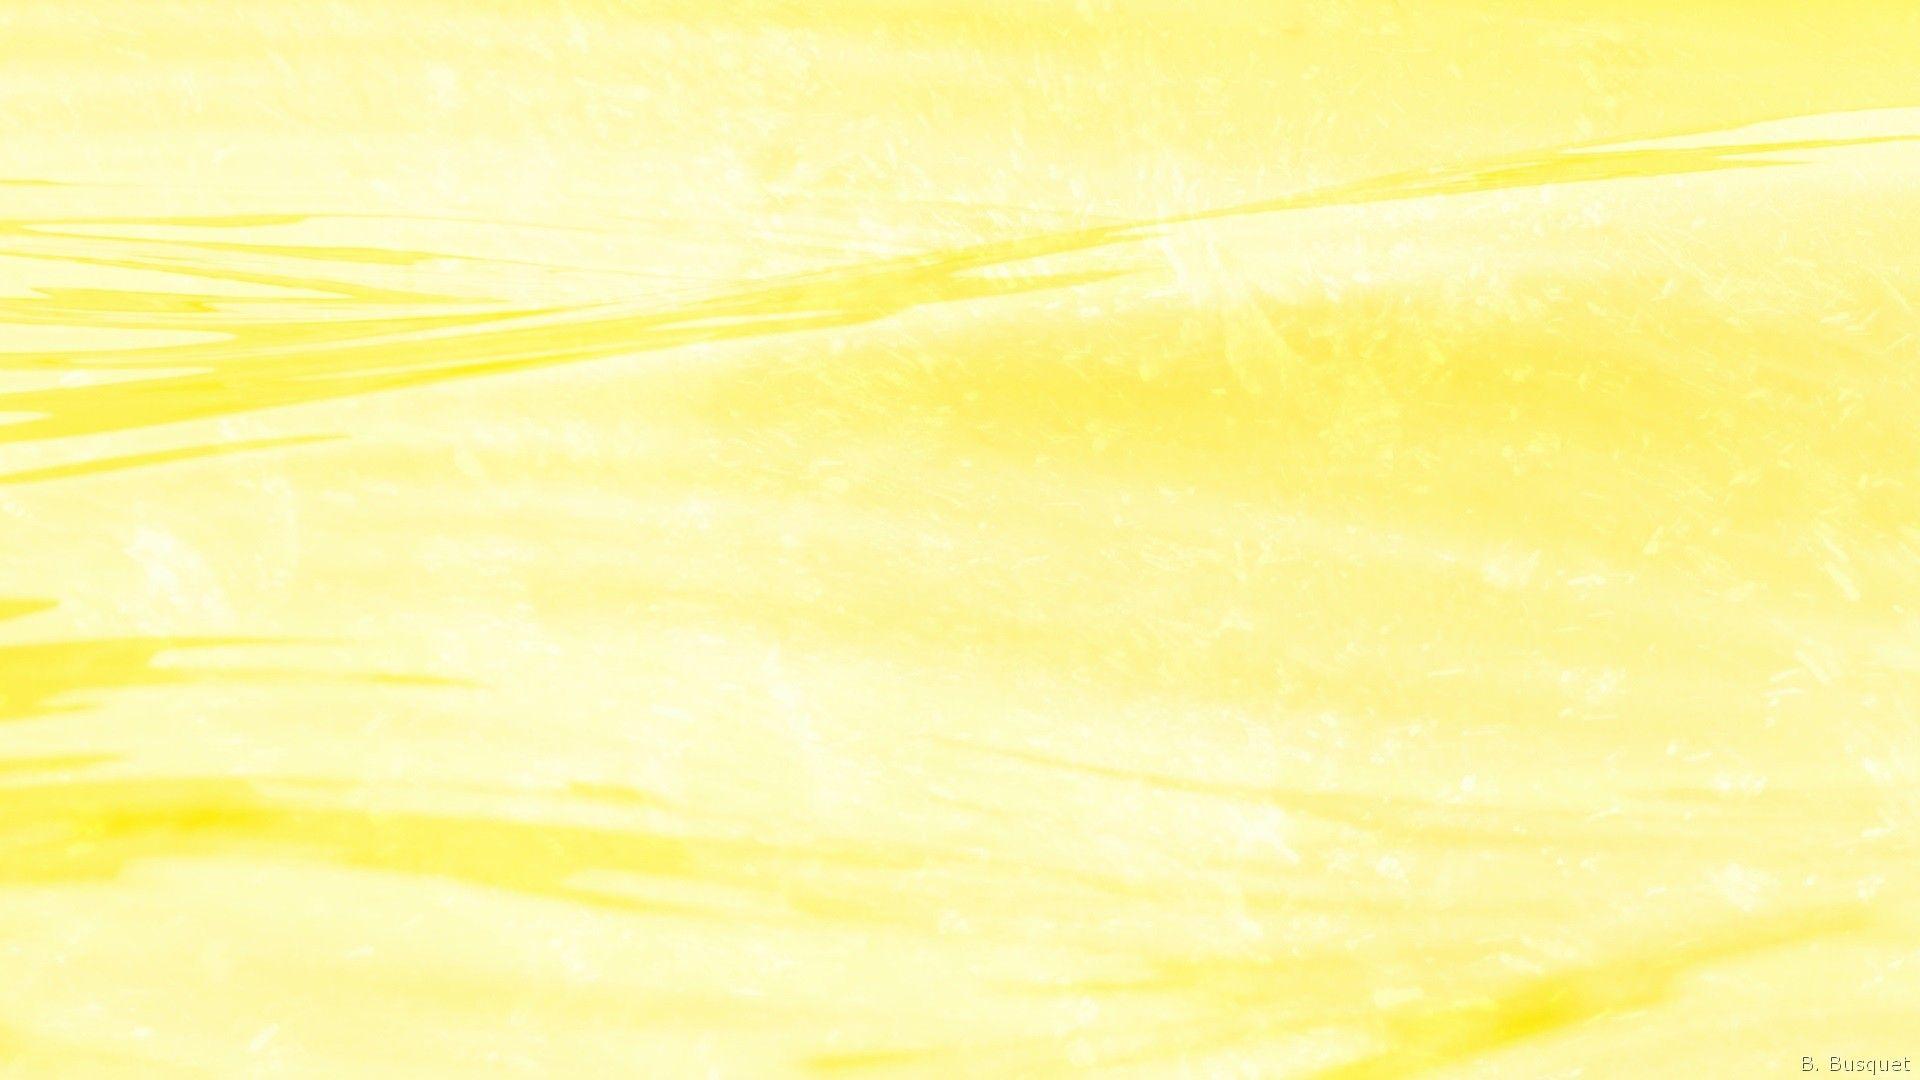 Pastel Yellow Laptop Wallpapers - Top Free Pastel Yellow Laptop